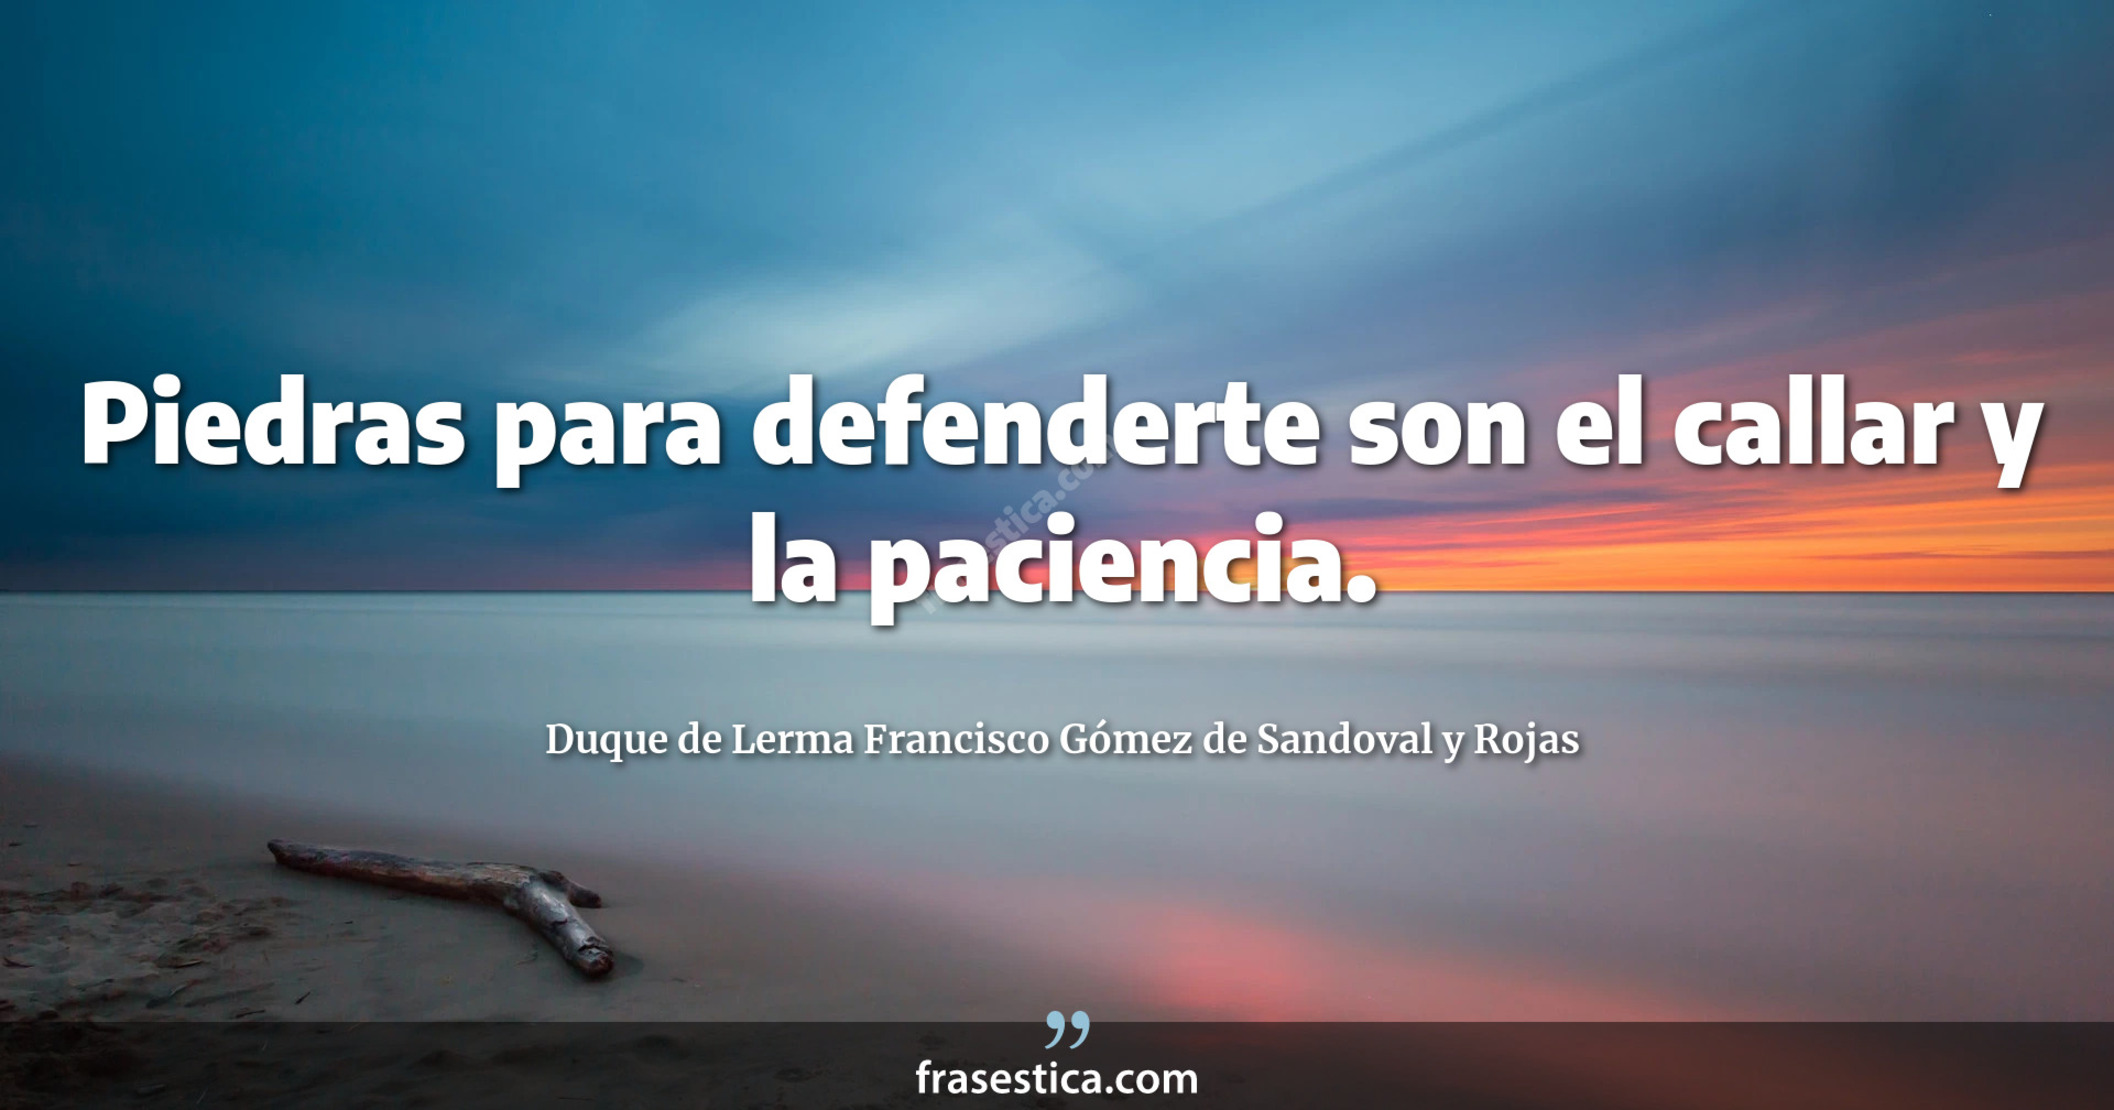 Piedras para defenderte son el callar y la paciencia. - Duque de Lerma Francisco Gómez de Sandoval y Rojas